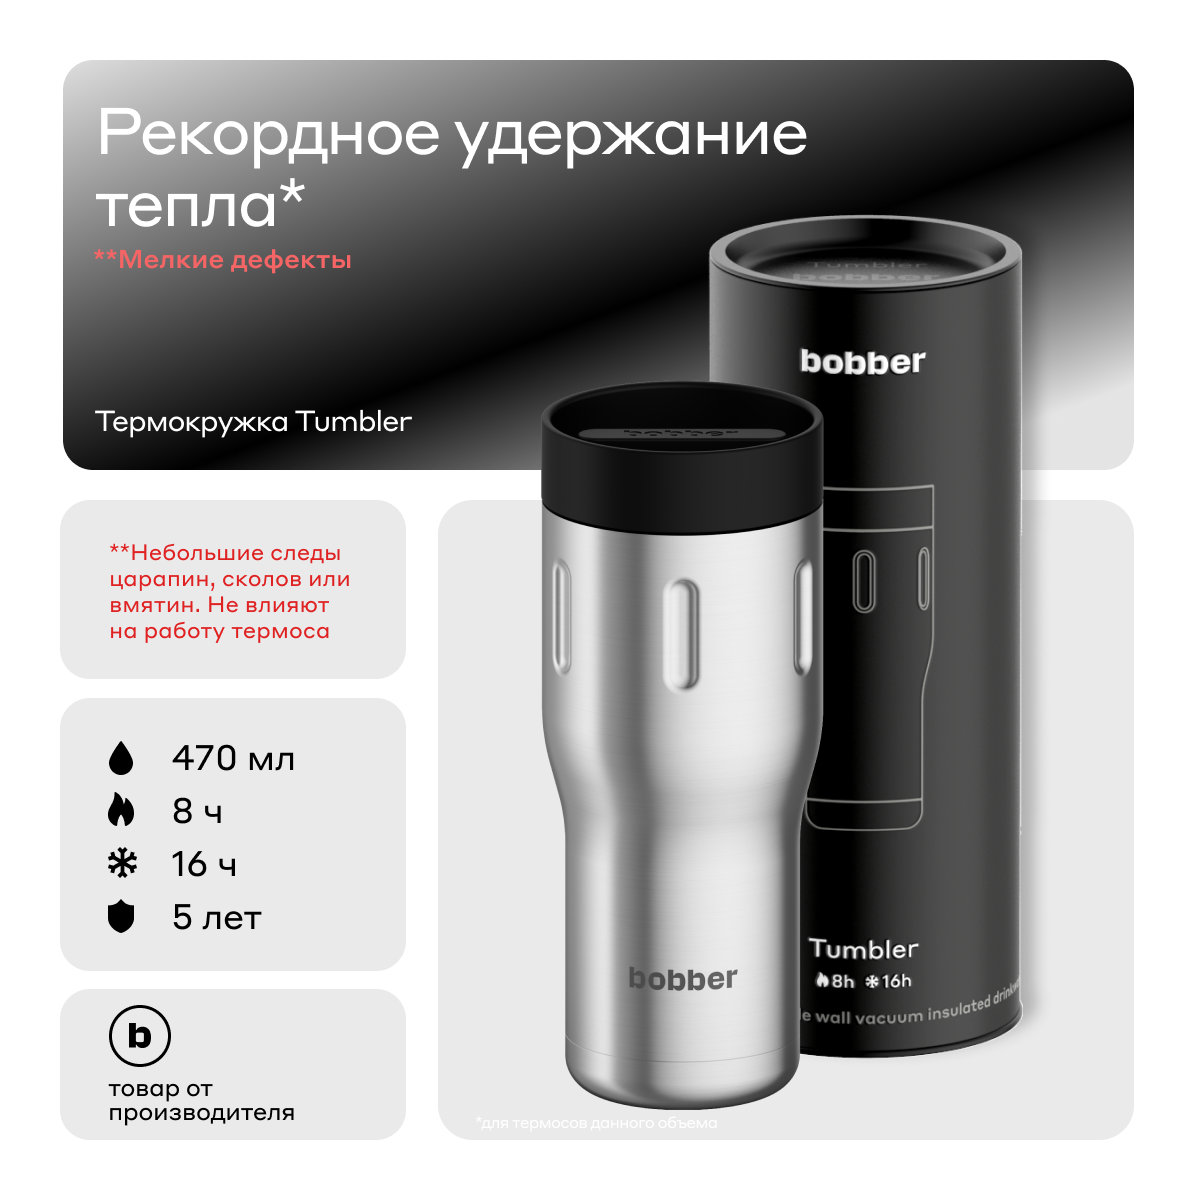 Bobber/Термокружка для чая и кофе Tumbler 470 мл/Matte/держит тепло до 8 часов (Уценка)